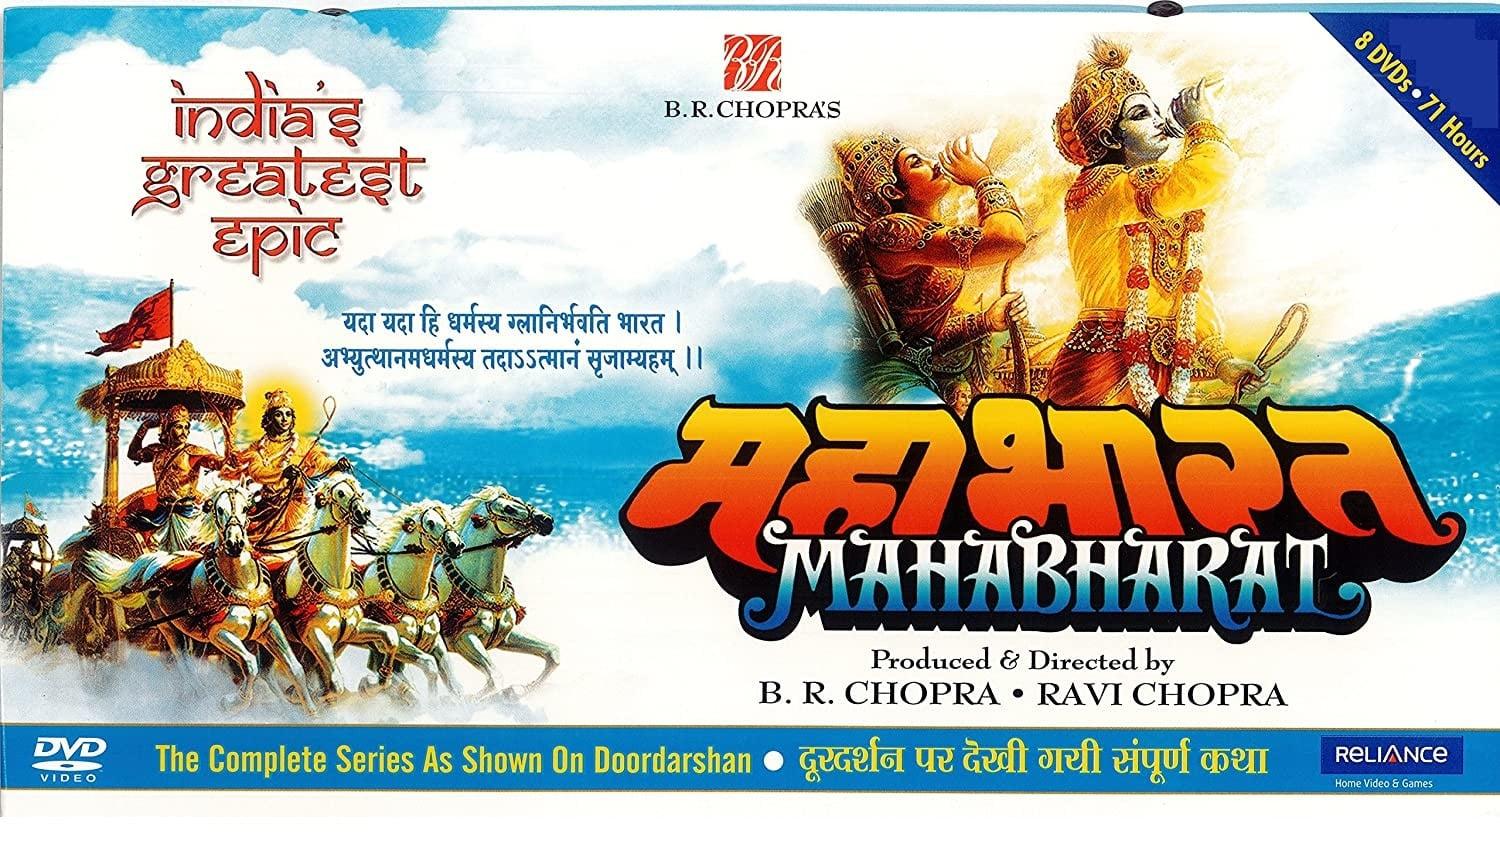 Mahabharat backdrop